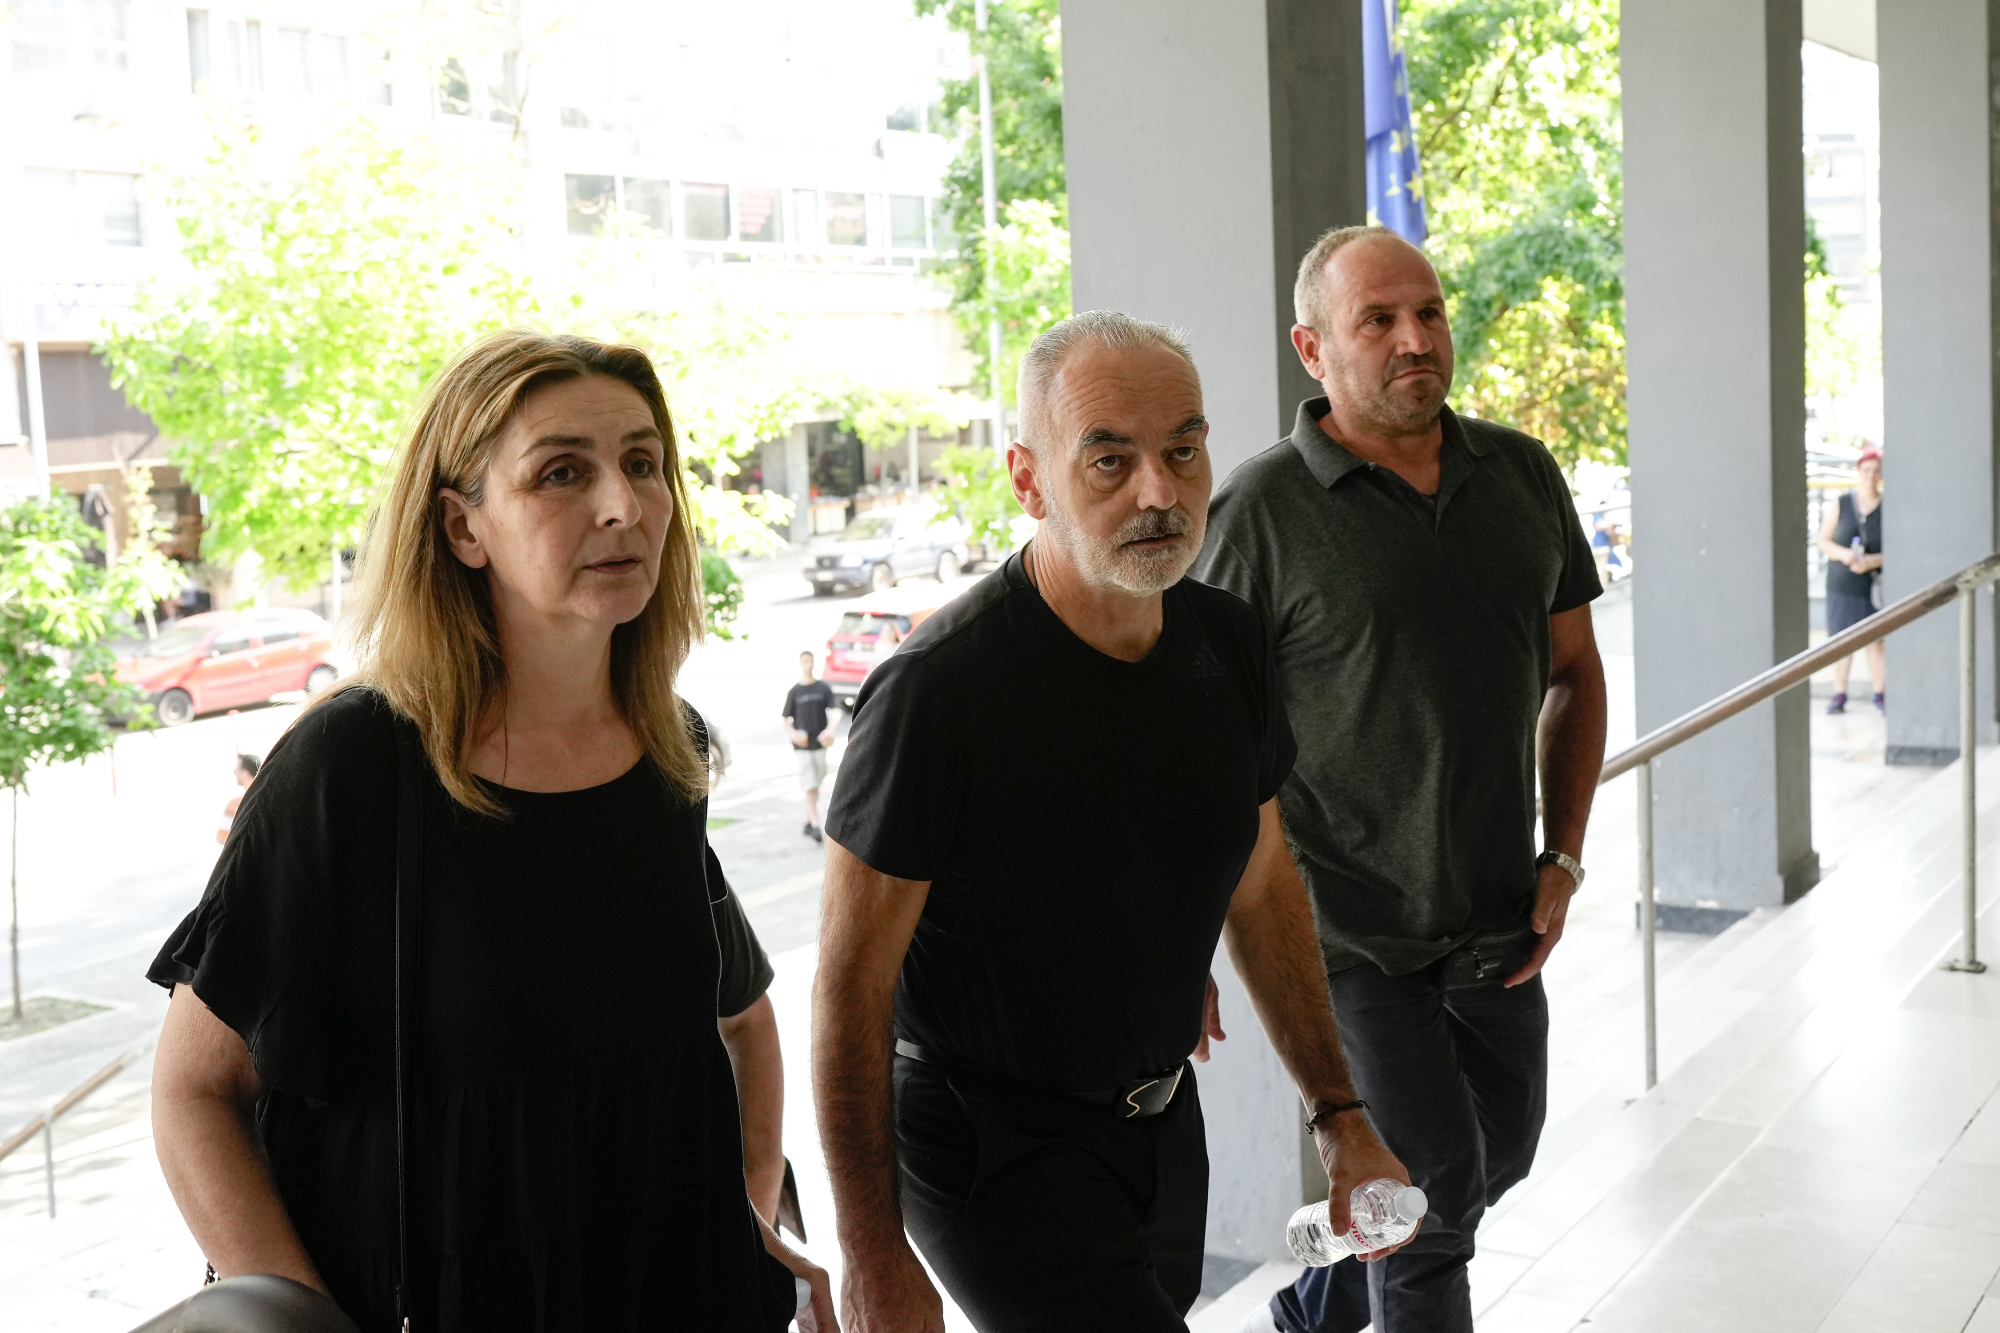 Άλκης Καμπανός: Αίτημα έφεσης κατά της απόφασης του δικαστηρίου από την οικογένειά του